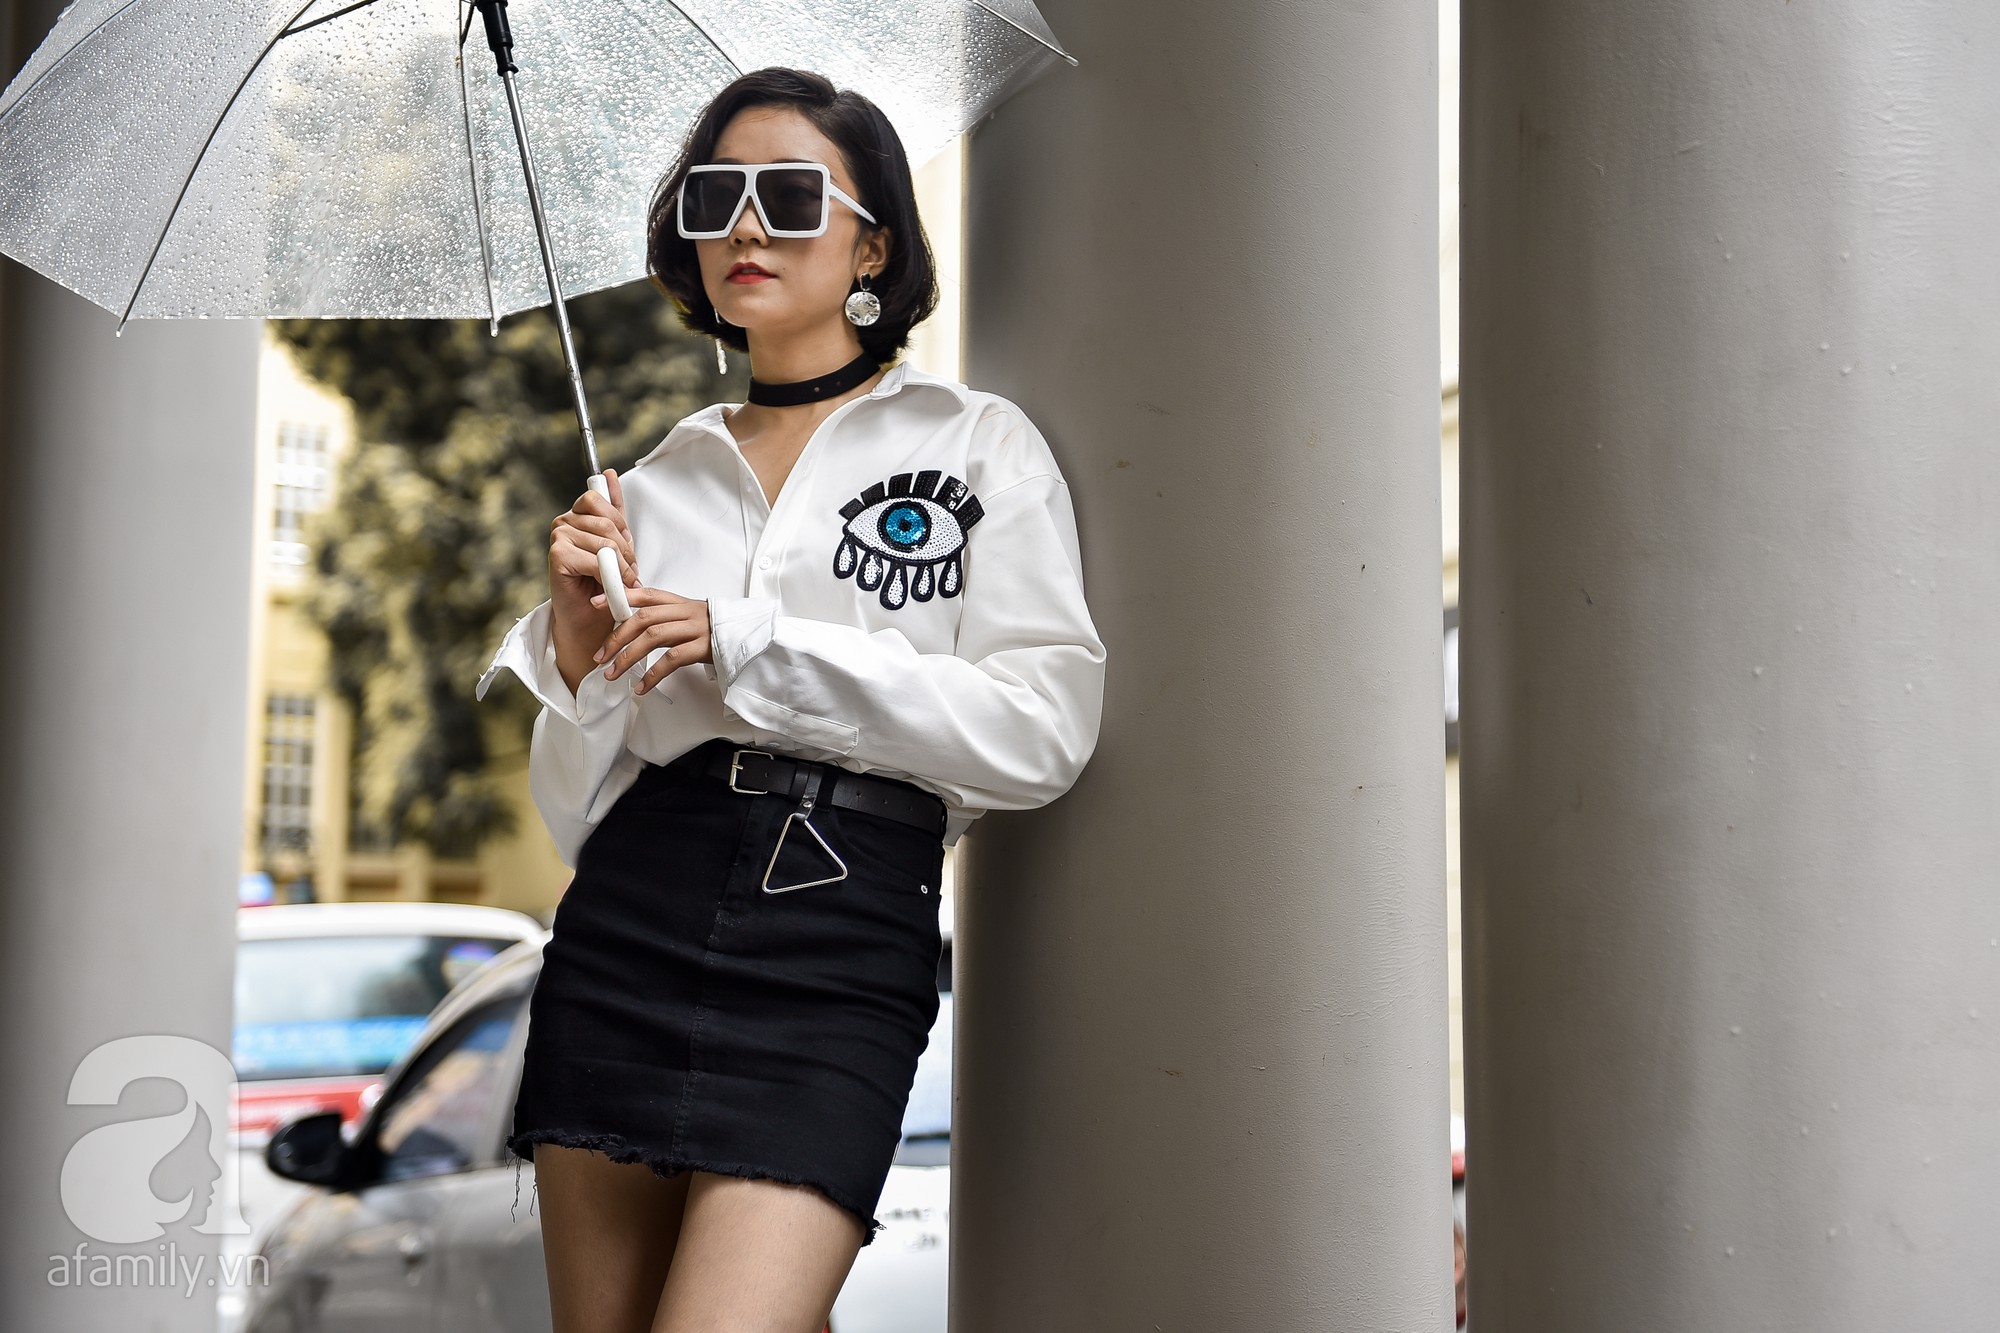 Mặc kệ mưa hay nắng, các quý cô miền Bắc vẫn ra phố khoe loạt street style đẹp miễn chê - Ảnh 2.